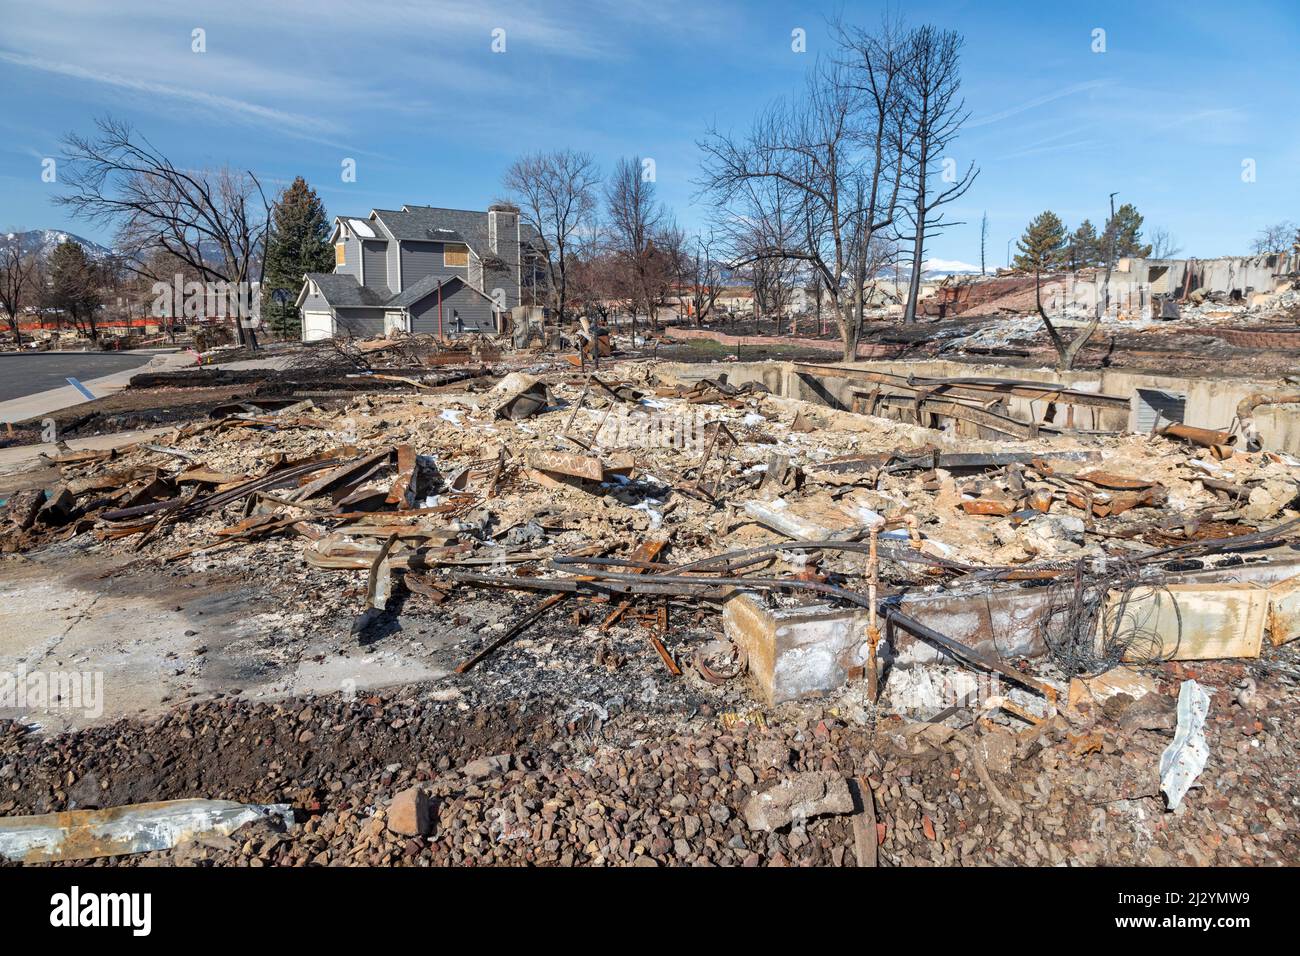 Louisville, Colorado - die Überreste nach dem Marshall Fire, dem zerstörerischsten Waldbrand Colorados, der im Dezember 2021 1.000 Häuser zerstörte. Das Fi Stockfoto